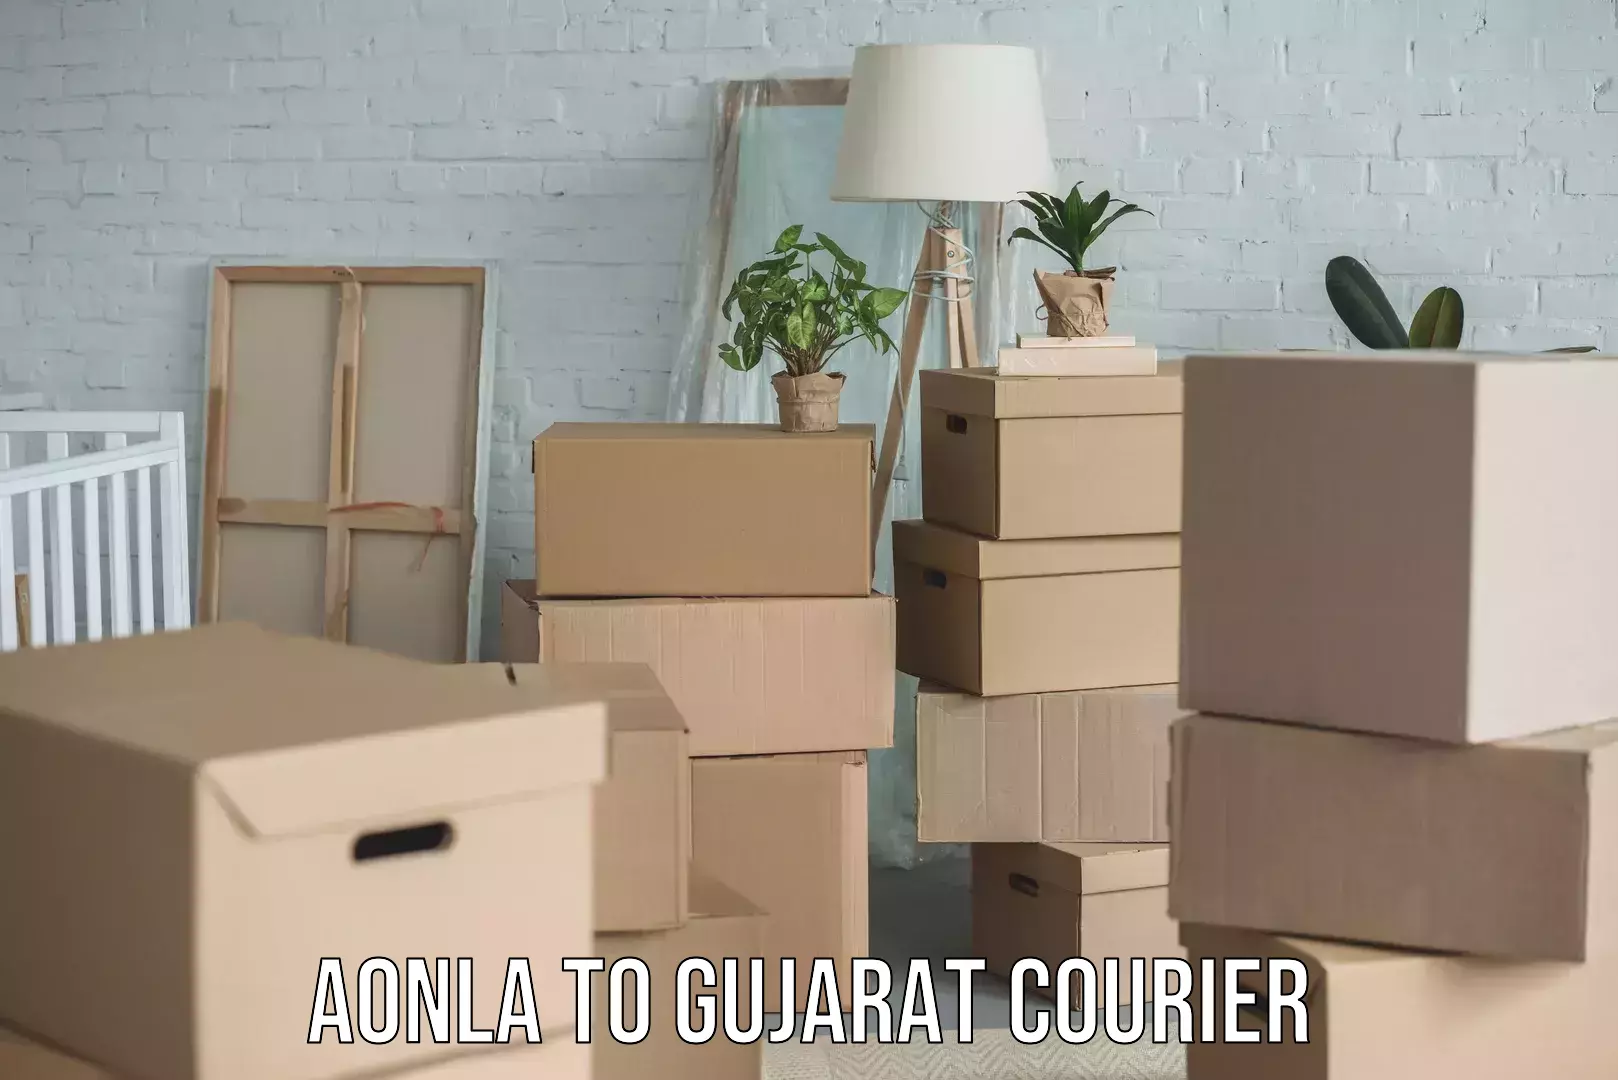 Efficient parcel service Aonla to Gujarat